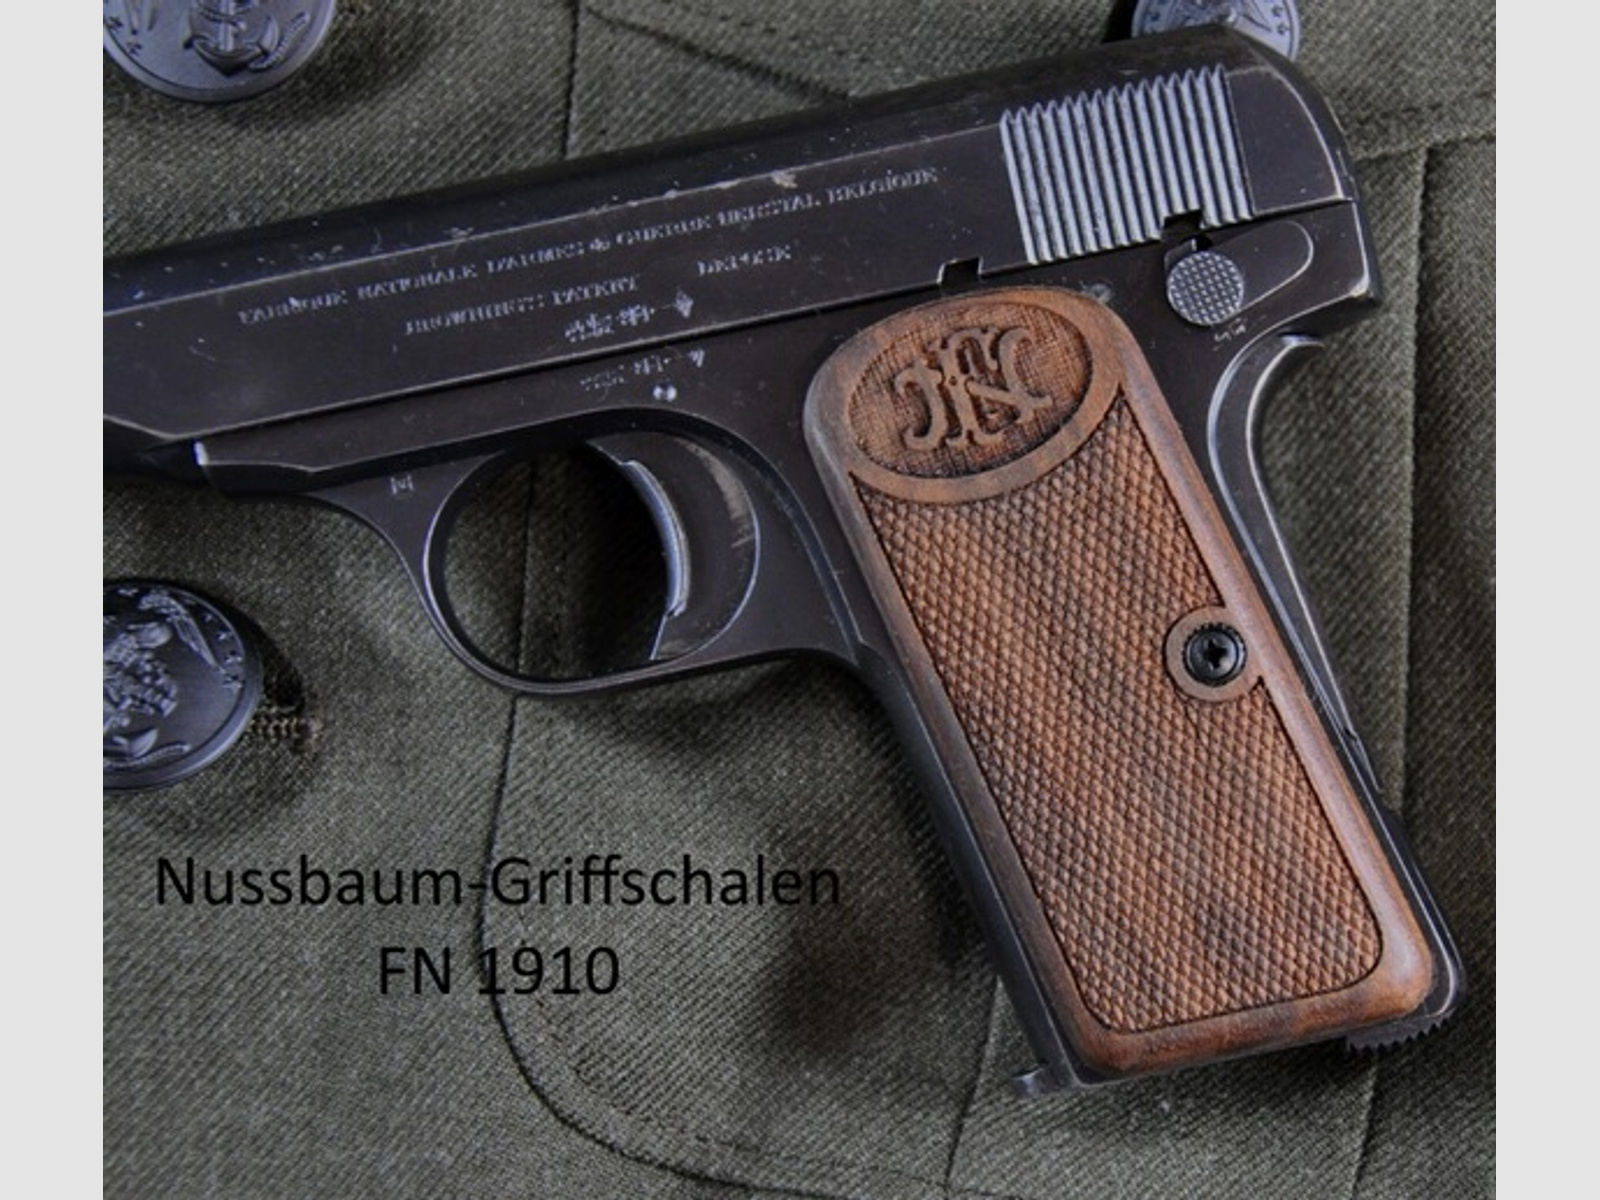 Nussbaum-Griffschalen für Pistole FN Mod. 1910